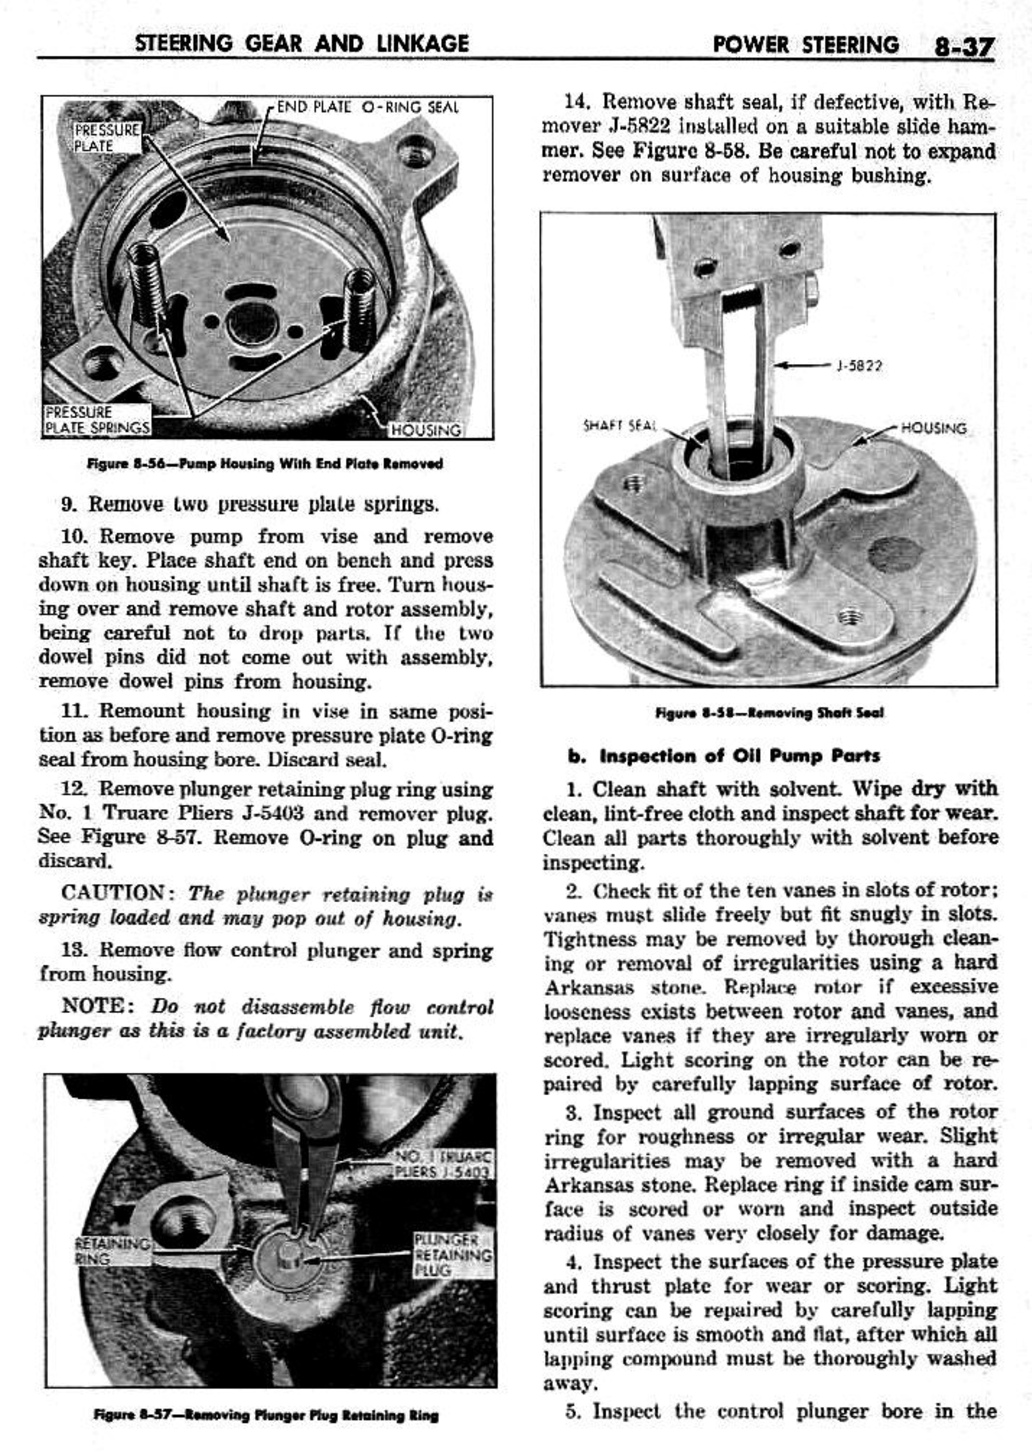 n_09 1959 Buick Shop Manual - Steering-037-037.jpg